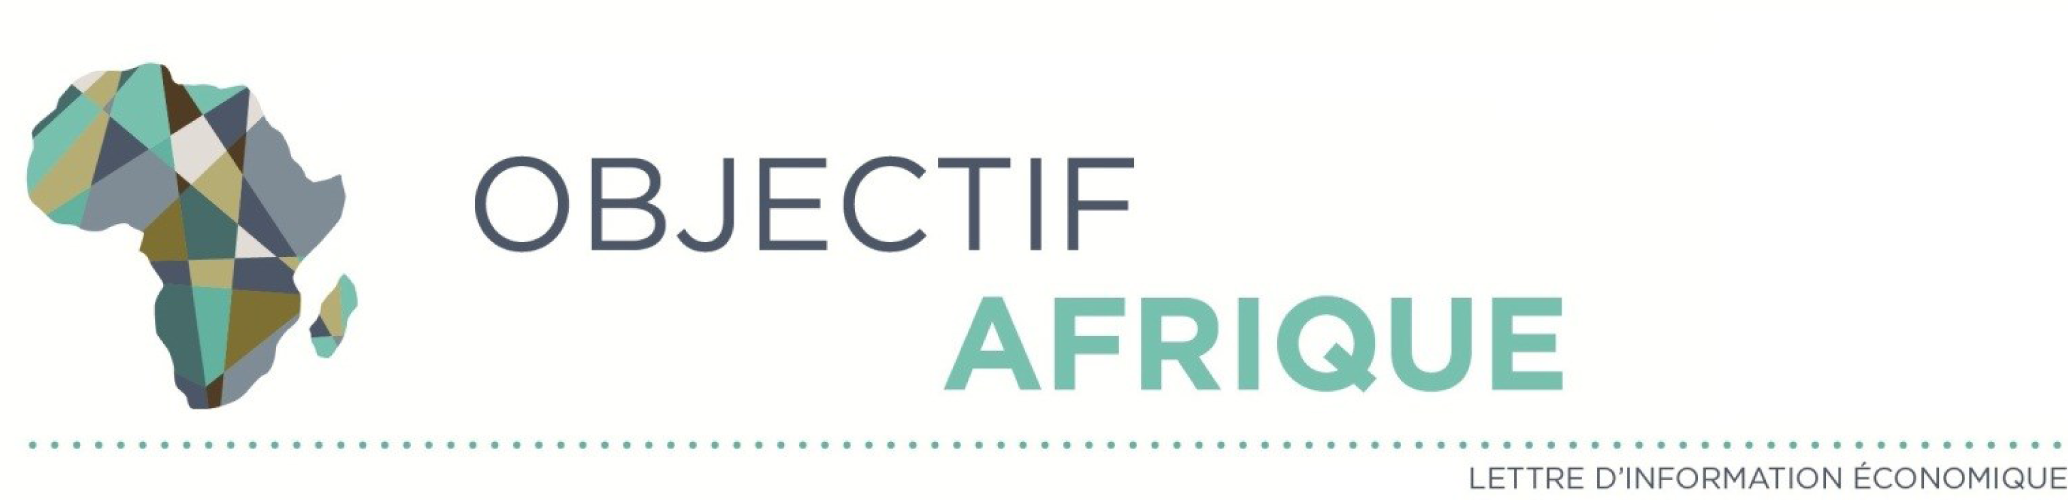 Objectif-Afrique